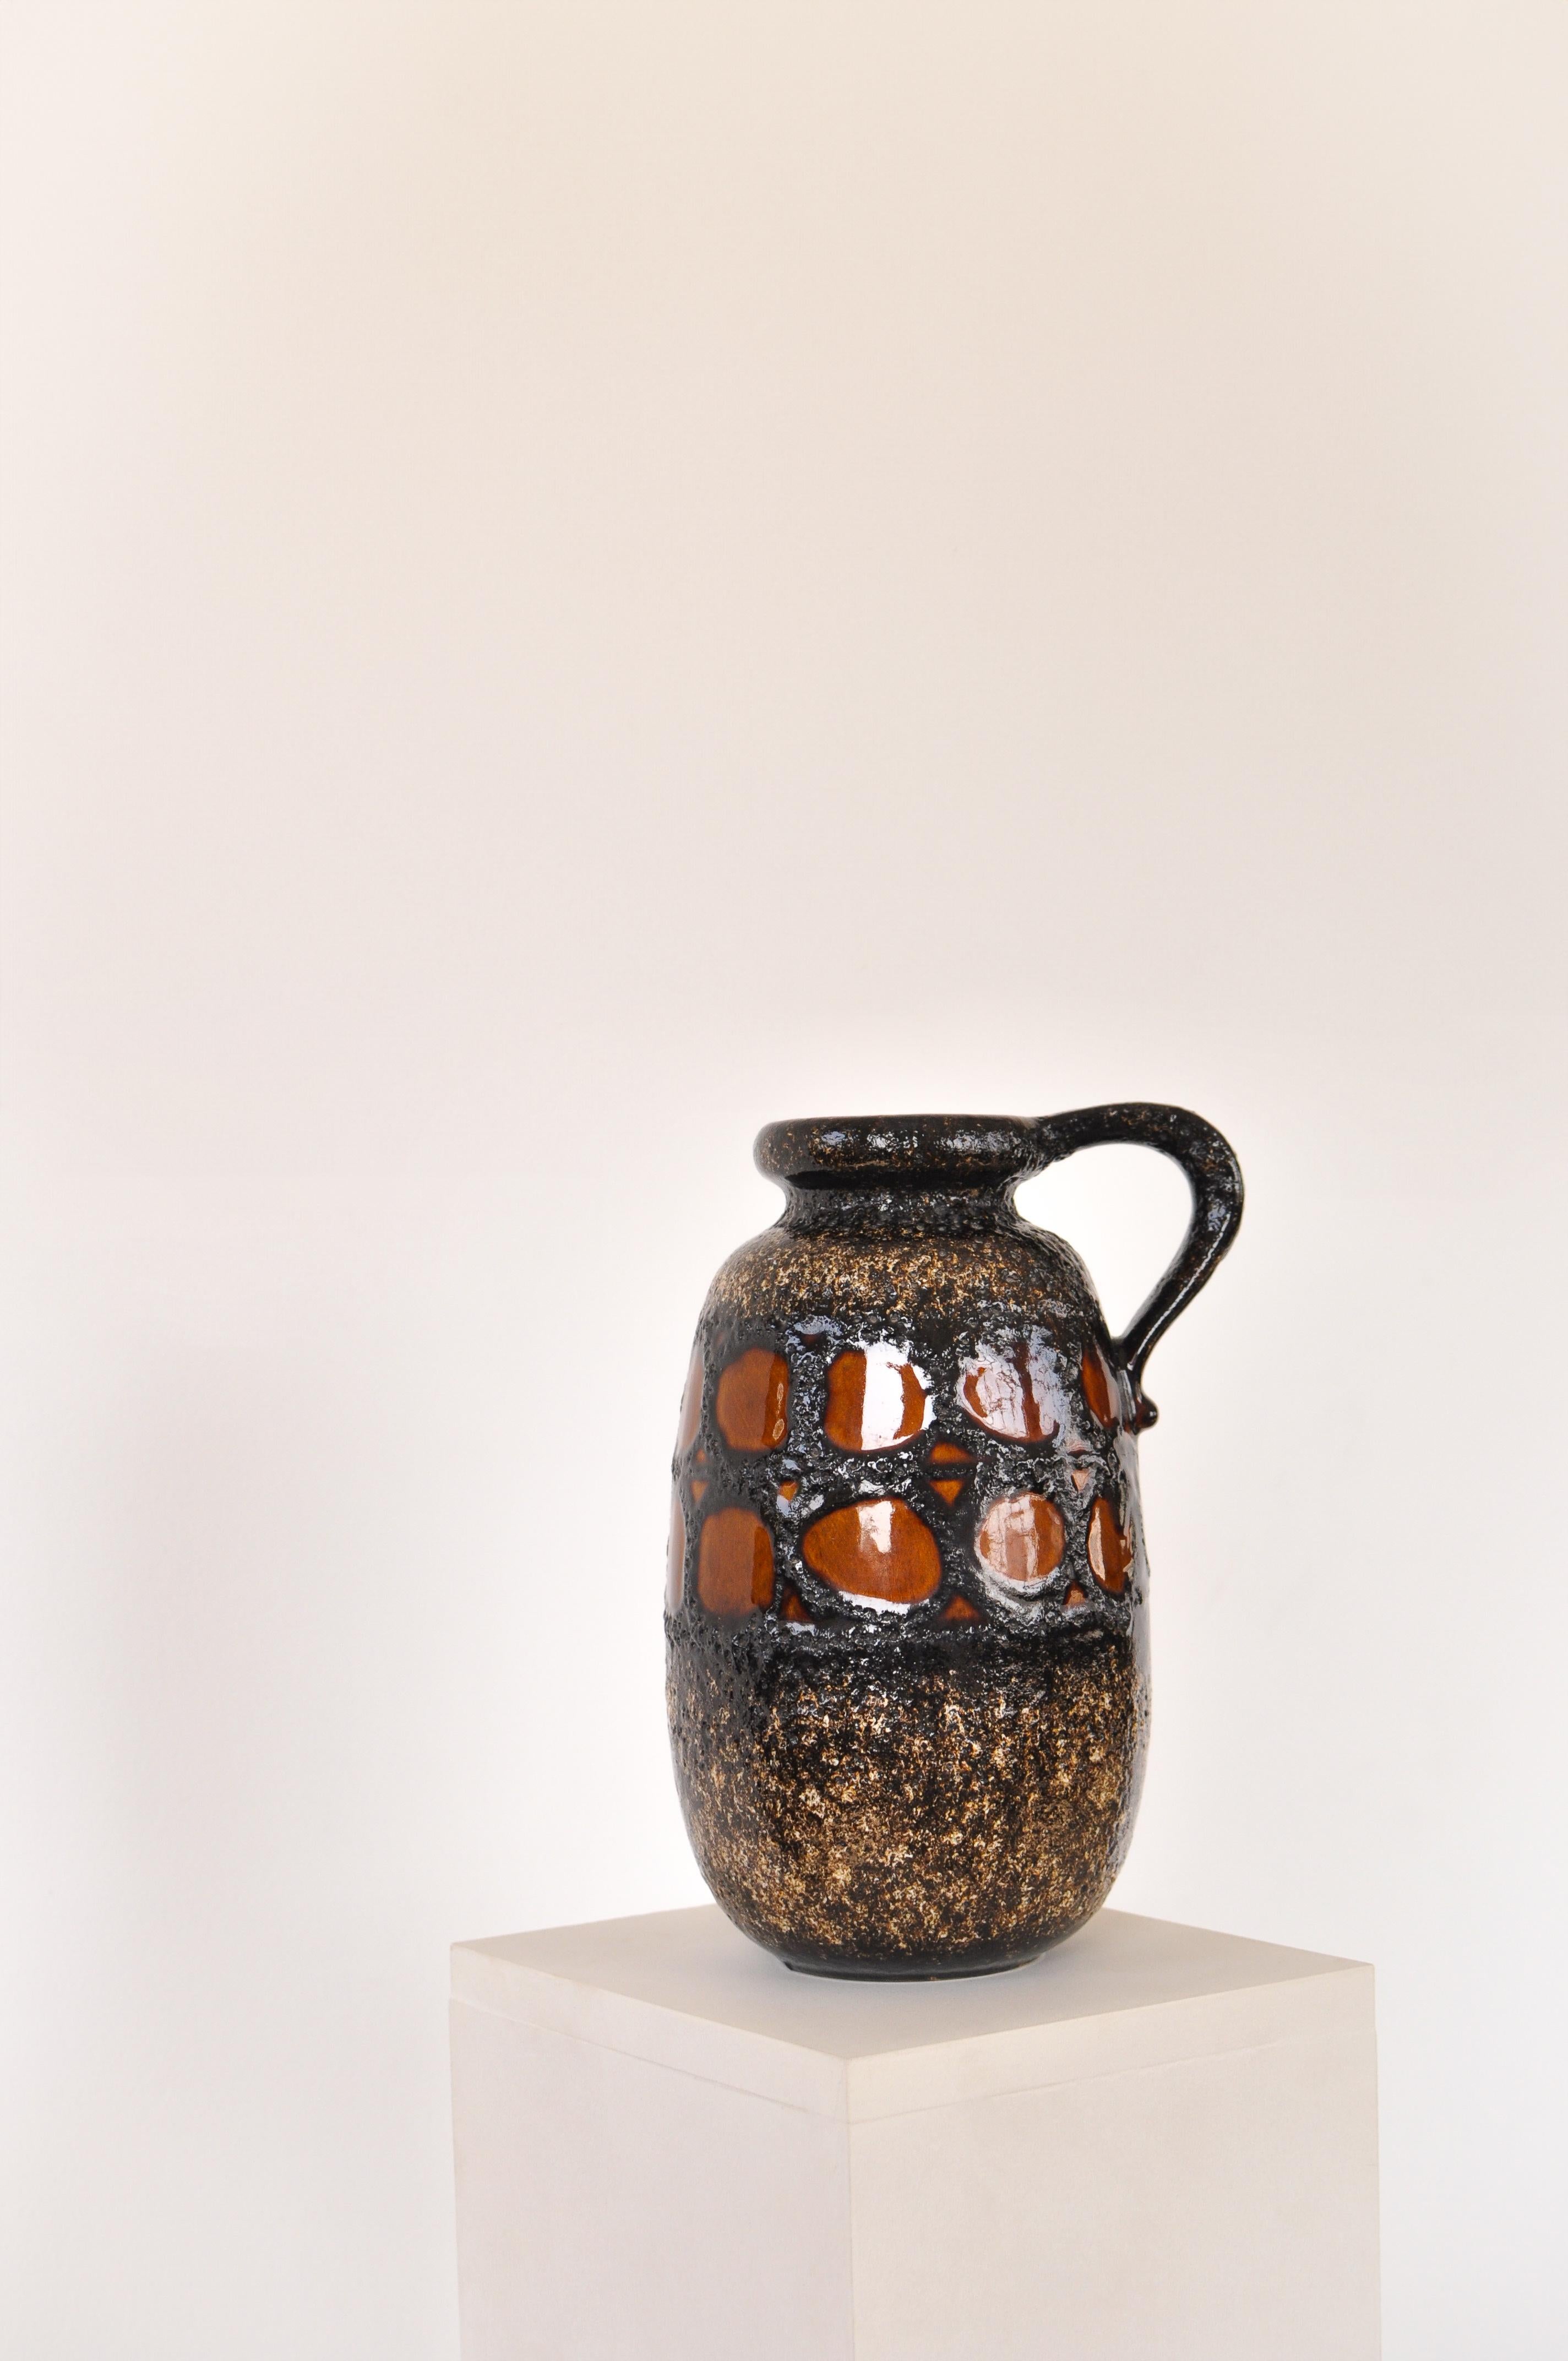 Vase aus glasierter Fettlava-Keramik, hergestellt in Ostdeutschland, Nummer 484-27. Brauner Hintergrund mit strukturierten Details in Schwarz und Orange. Stück mit Markierung auf der Unterseite.